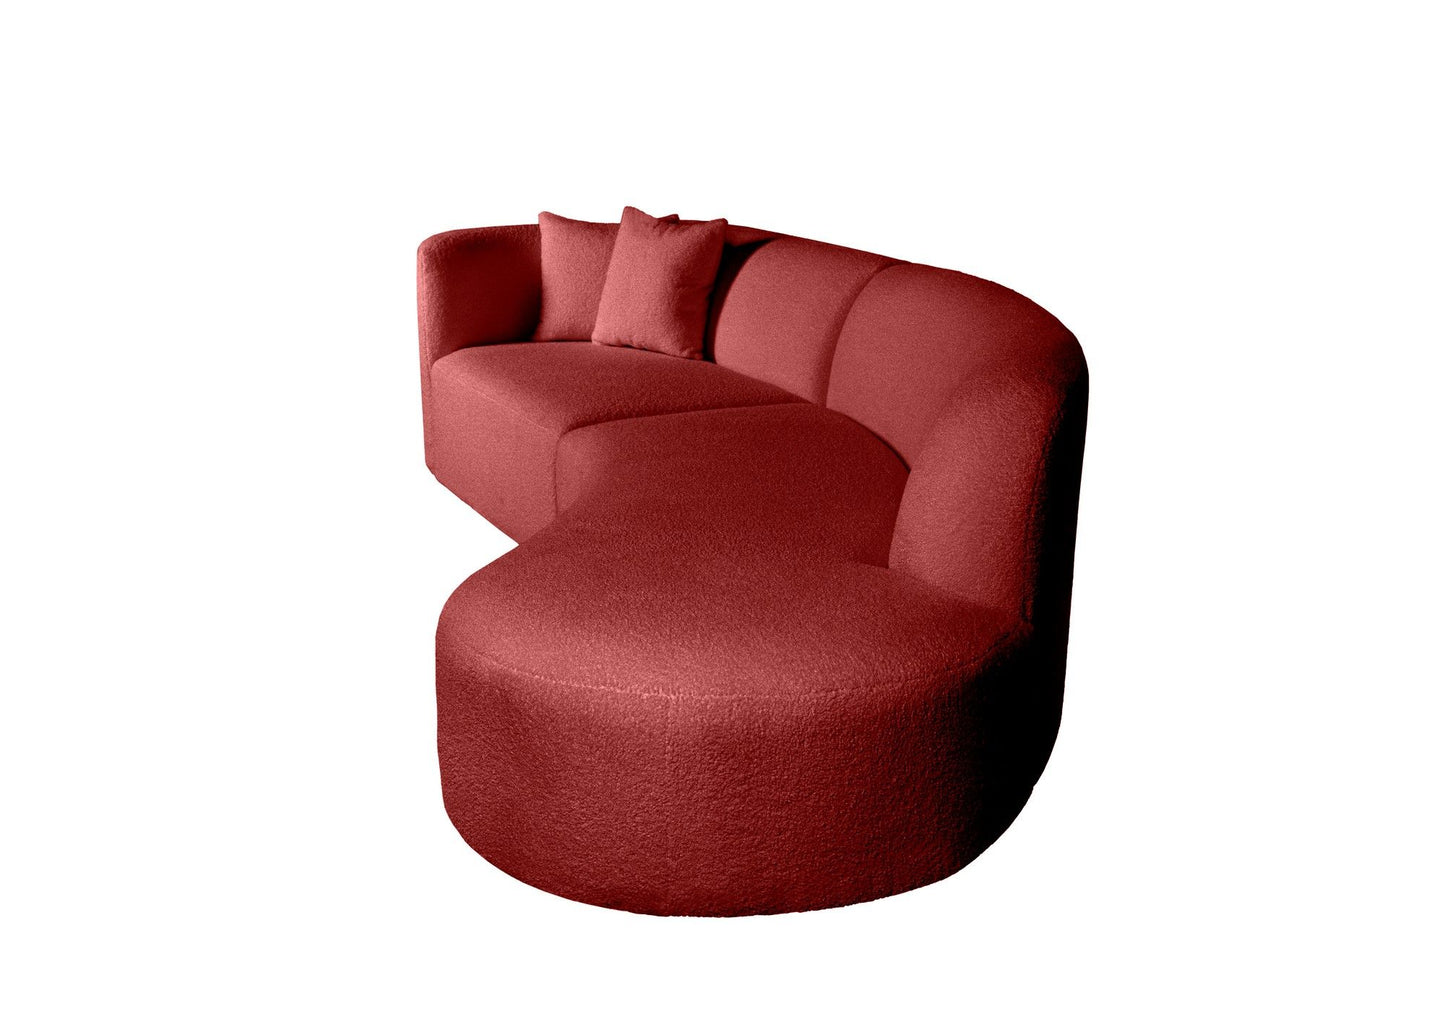 Banana R v2 - Tile Red - Corner Sofa